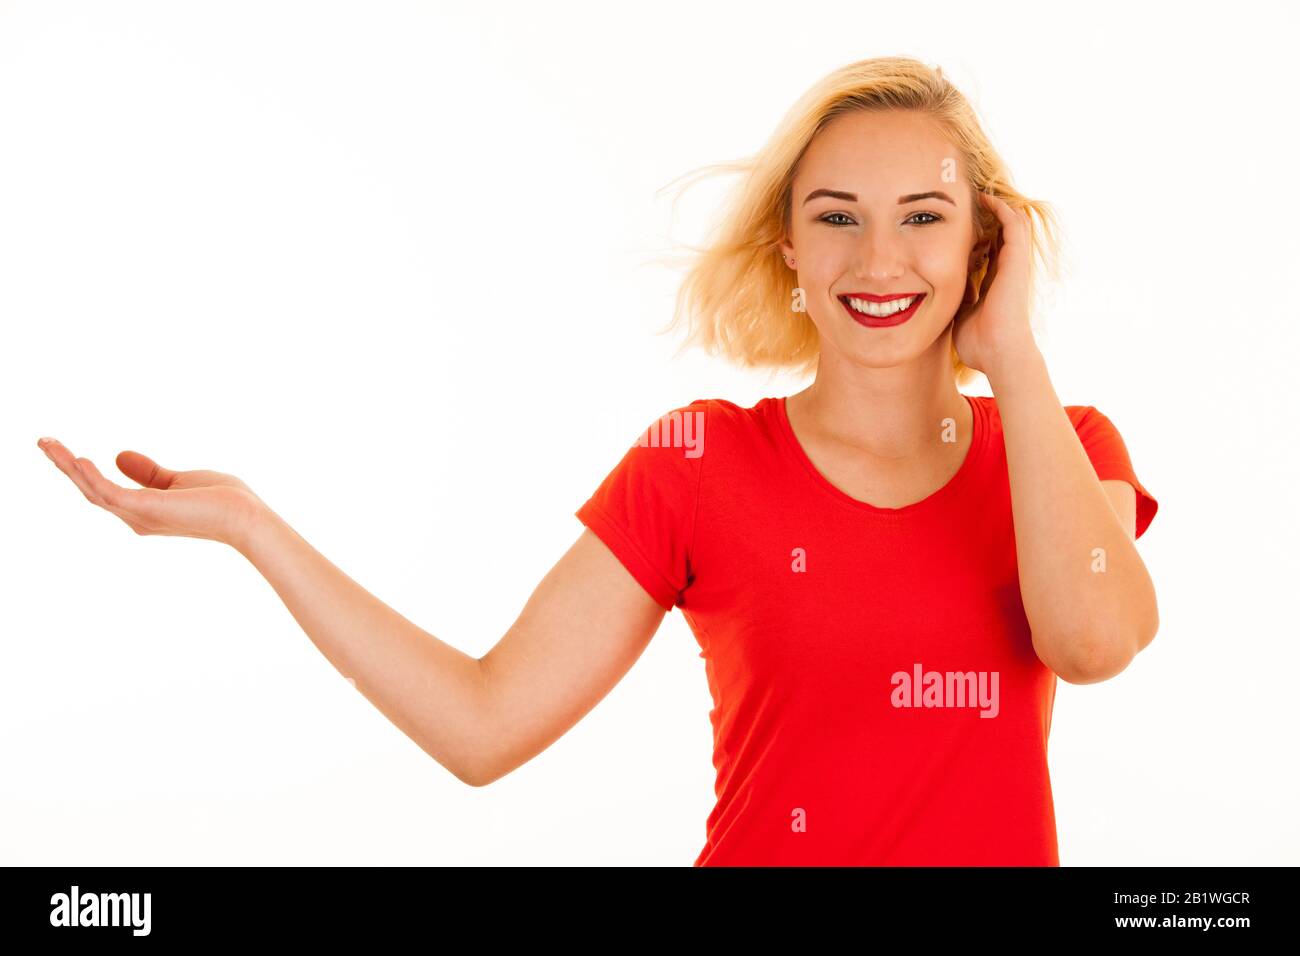 Belle jeune femme blonde attrayante pointant dans le copyspace lors de la publicité d'un produit Banque D'Images